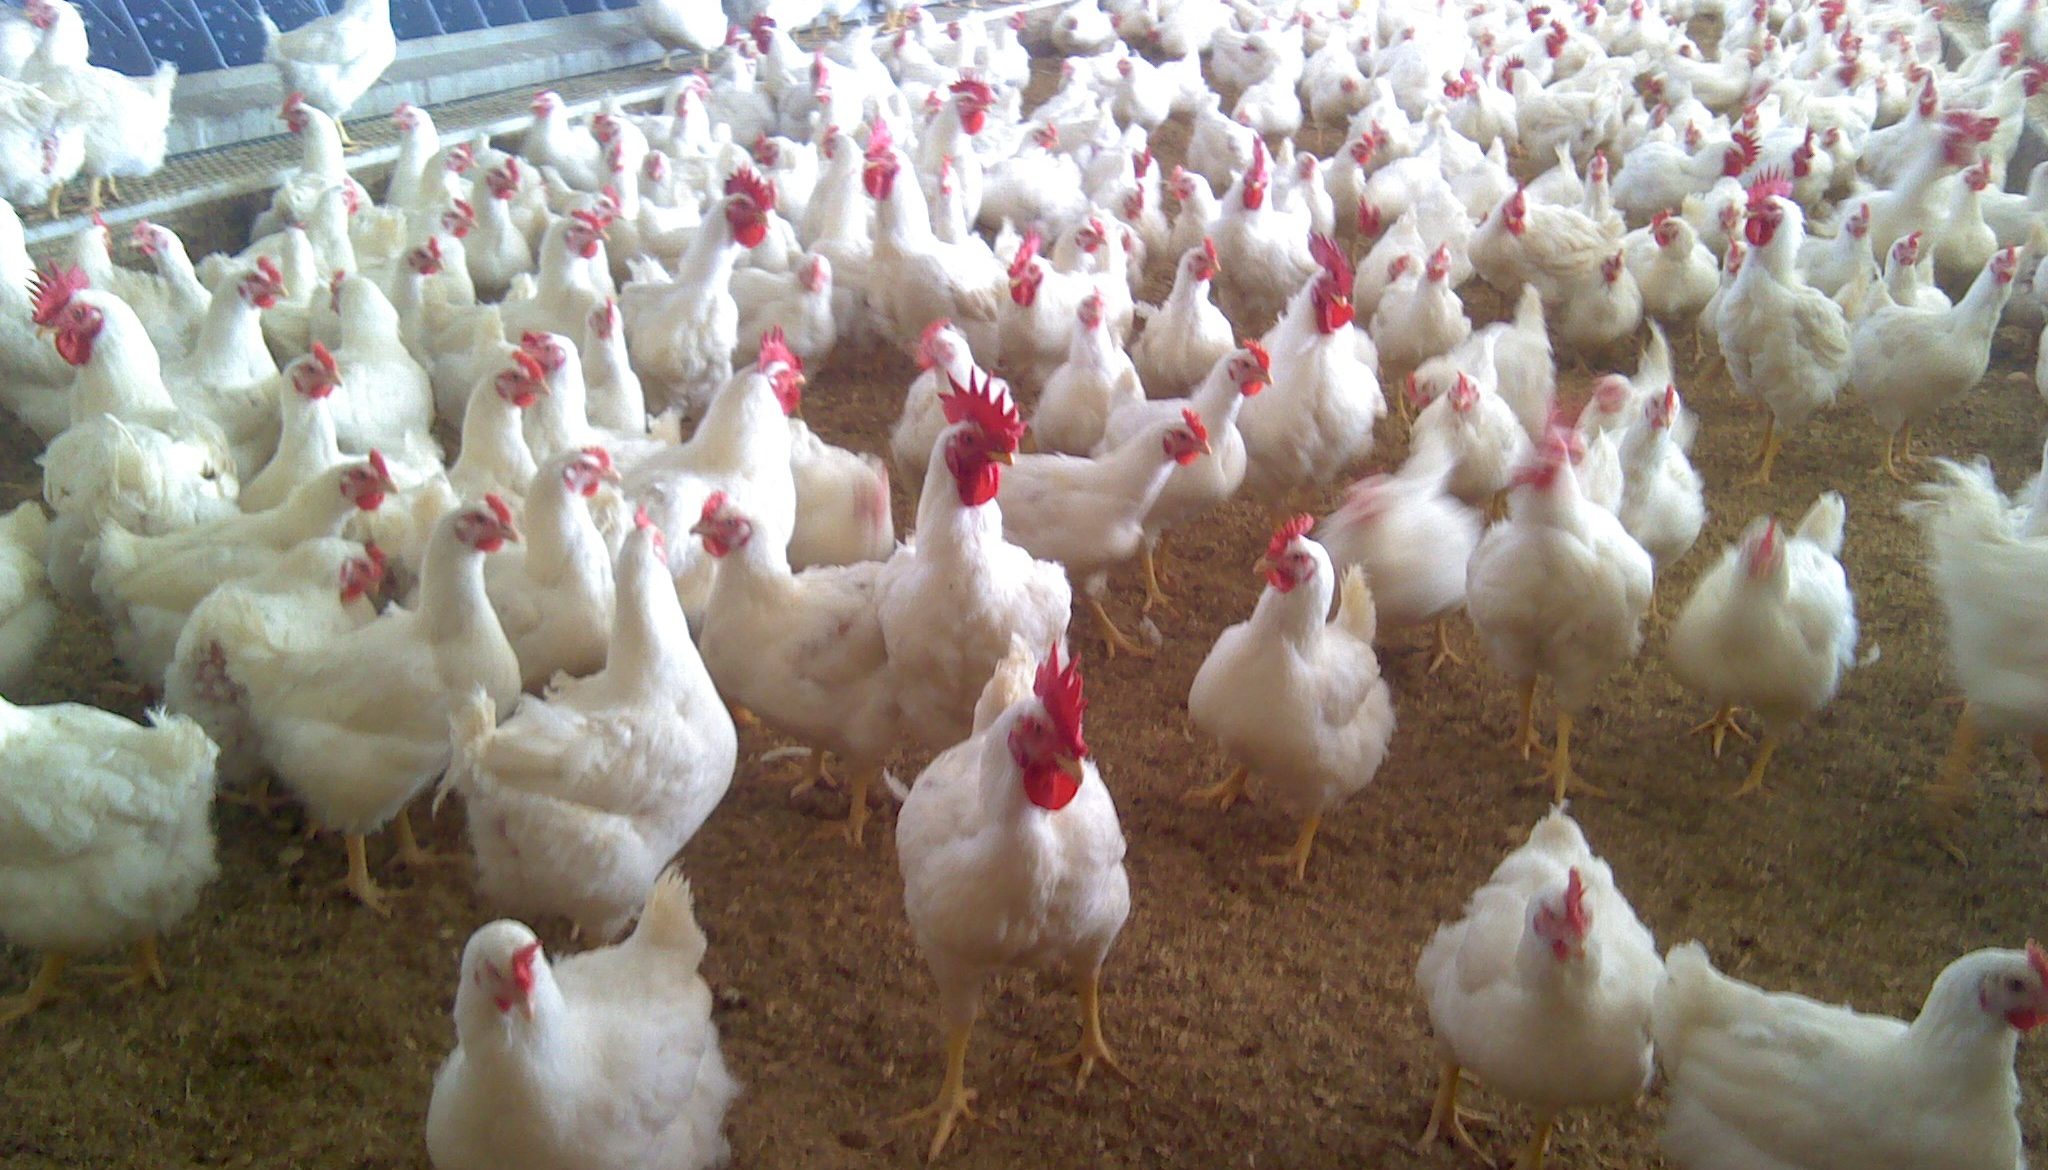 A flock of chicken